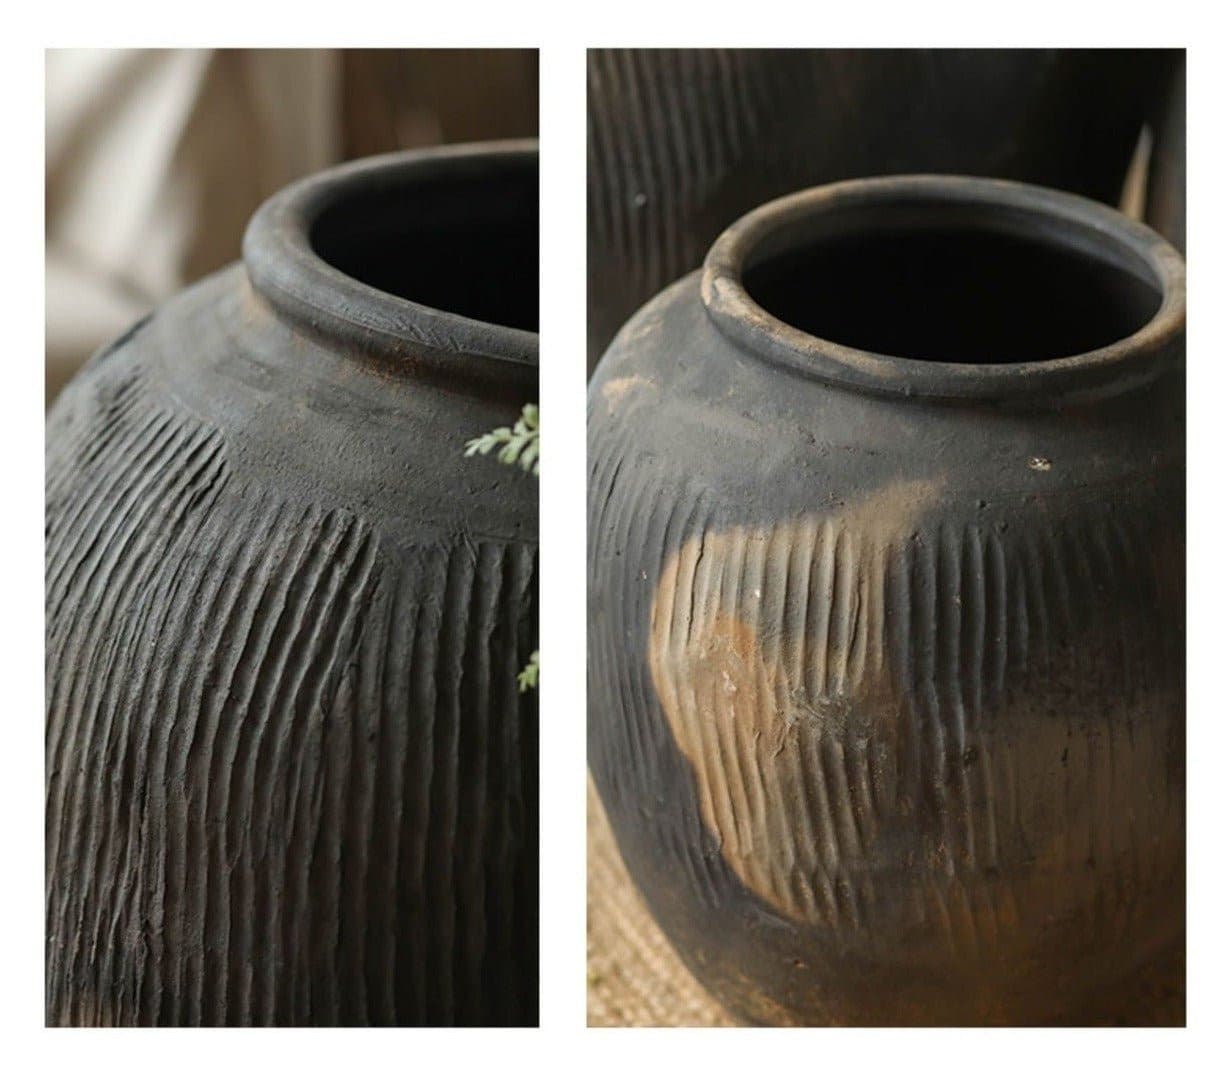 Large Round Black and Brown Floor Vase - -